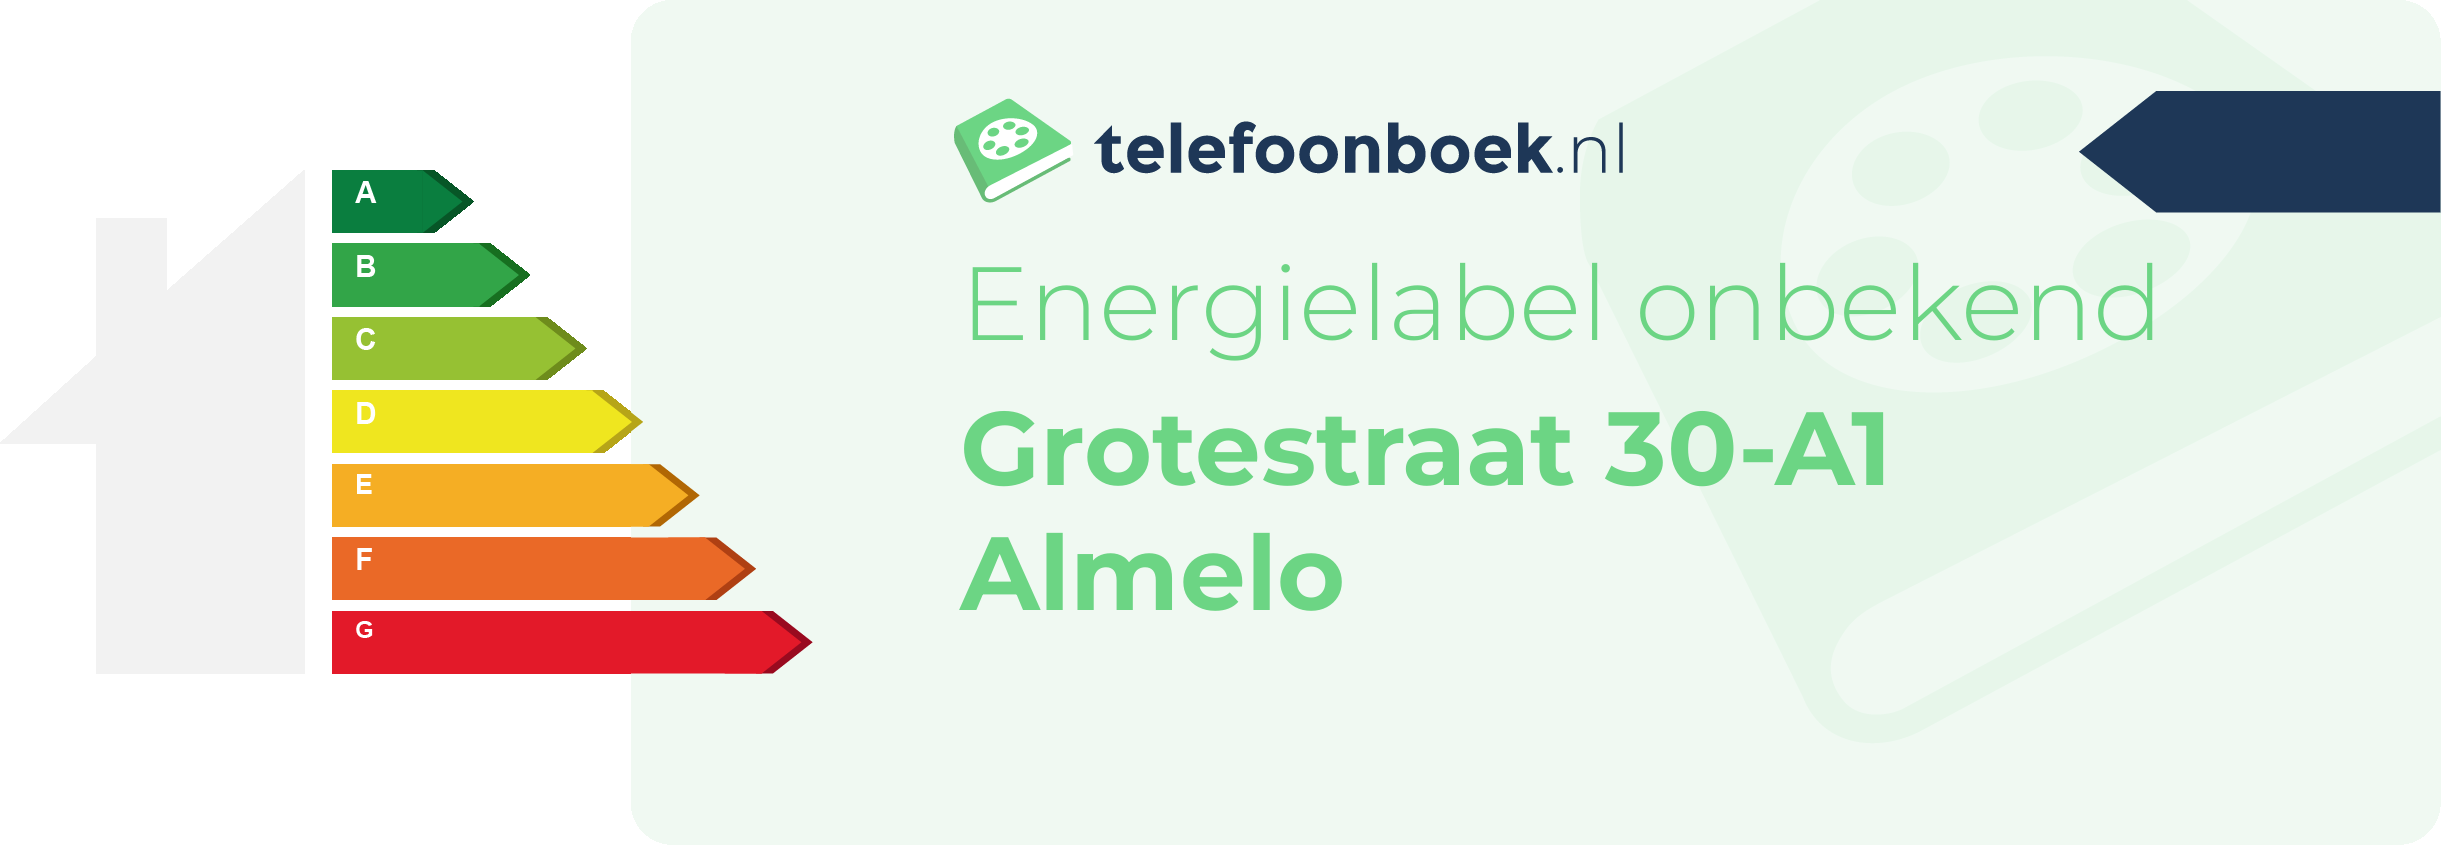 Energielabel Grotestraat 30-A1 Almelo